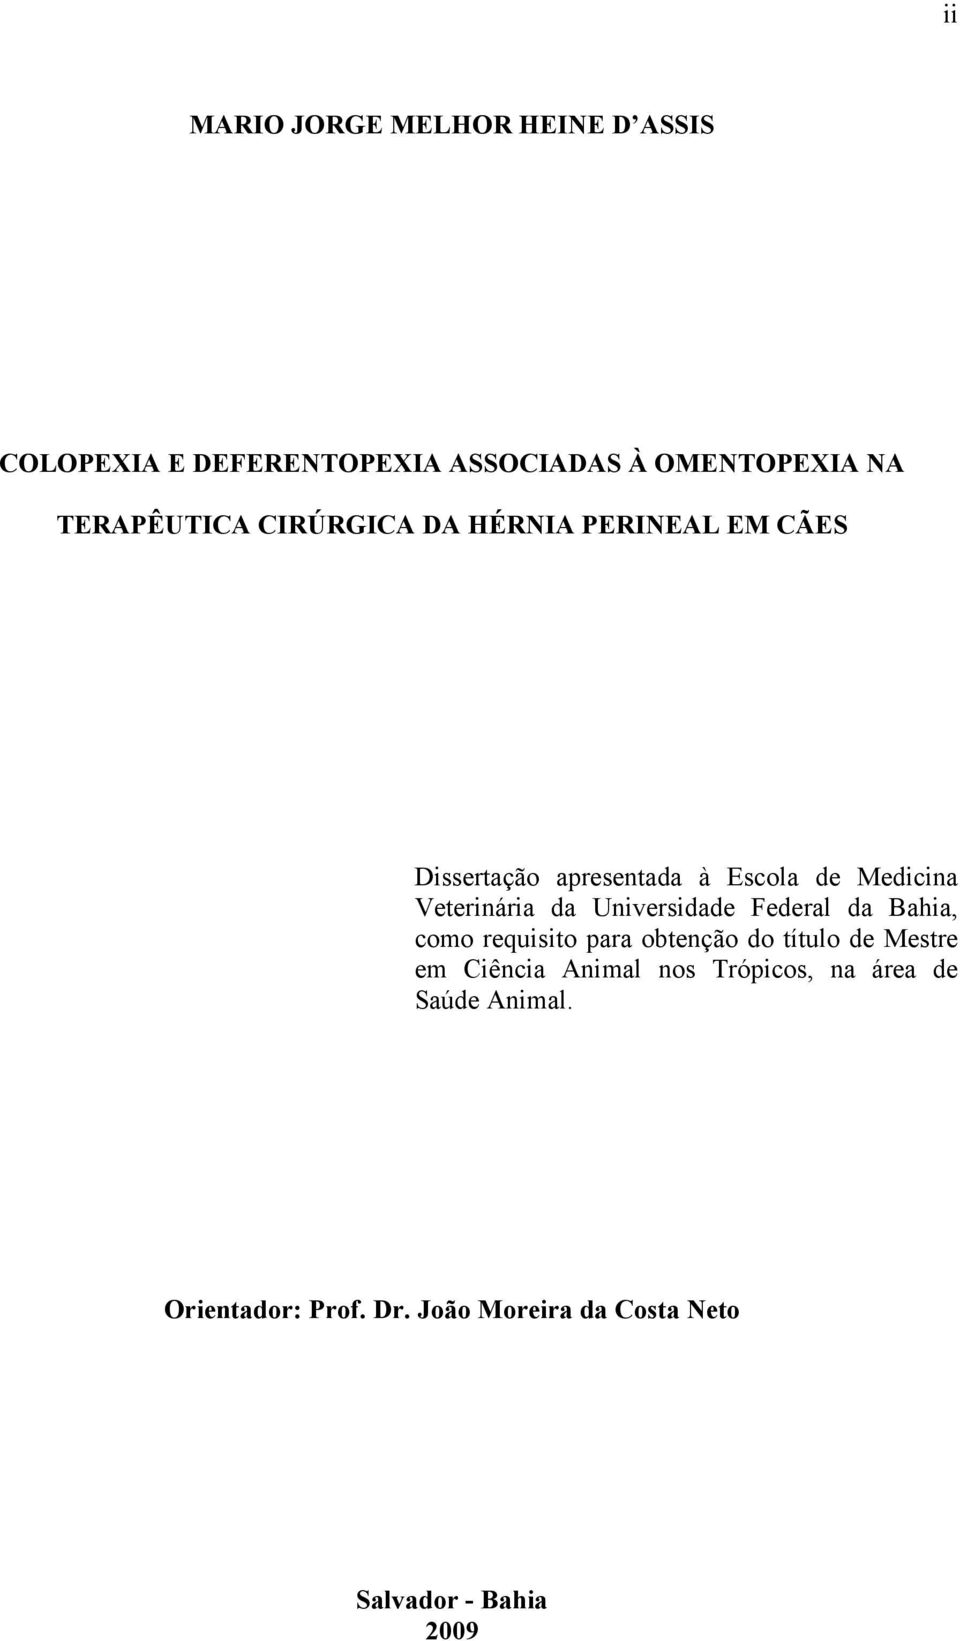 Veterinária da Universidade Federal da Bahia, como requisito para obtenção do título de Mestre em